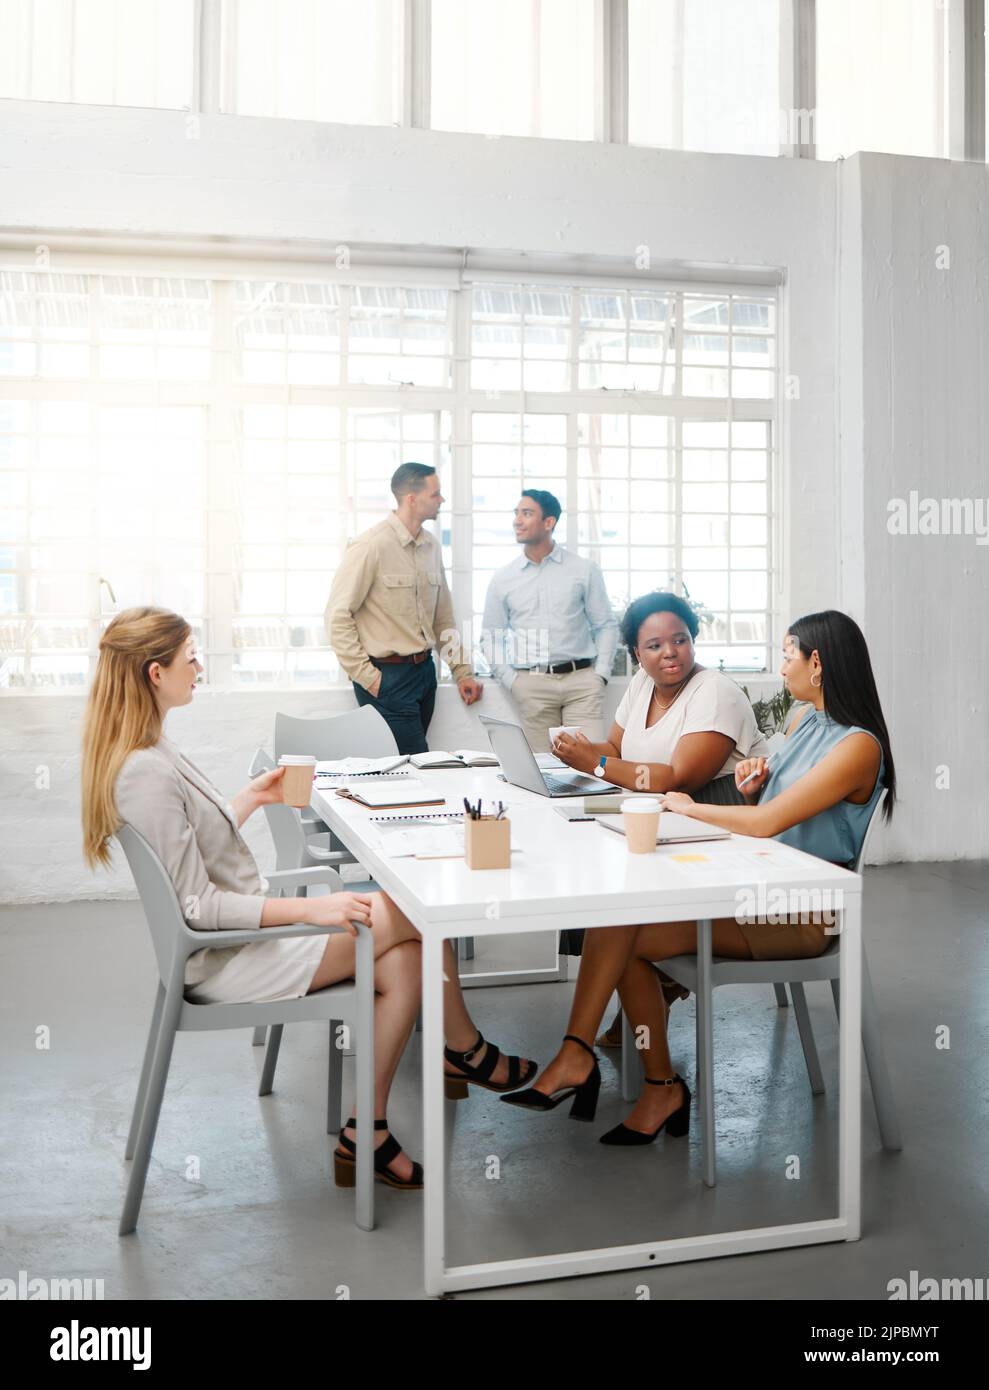 Persone aziendali, professionali e professionali che parlano in riunione, discutono e fanno conversazione in un ufficio moderno insieme al lavoro Foto Stock